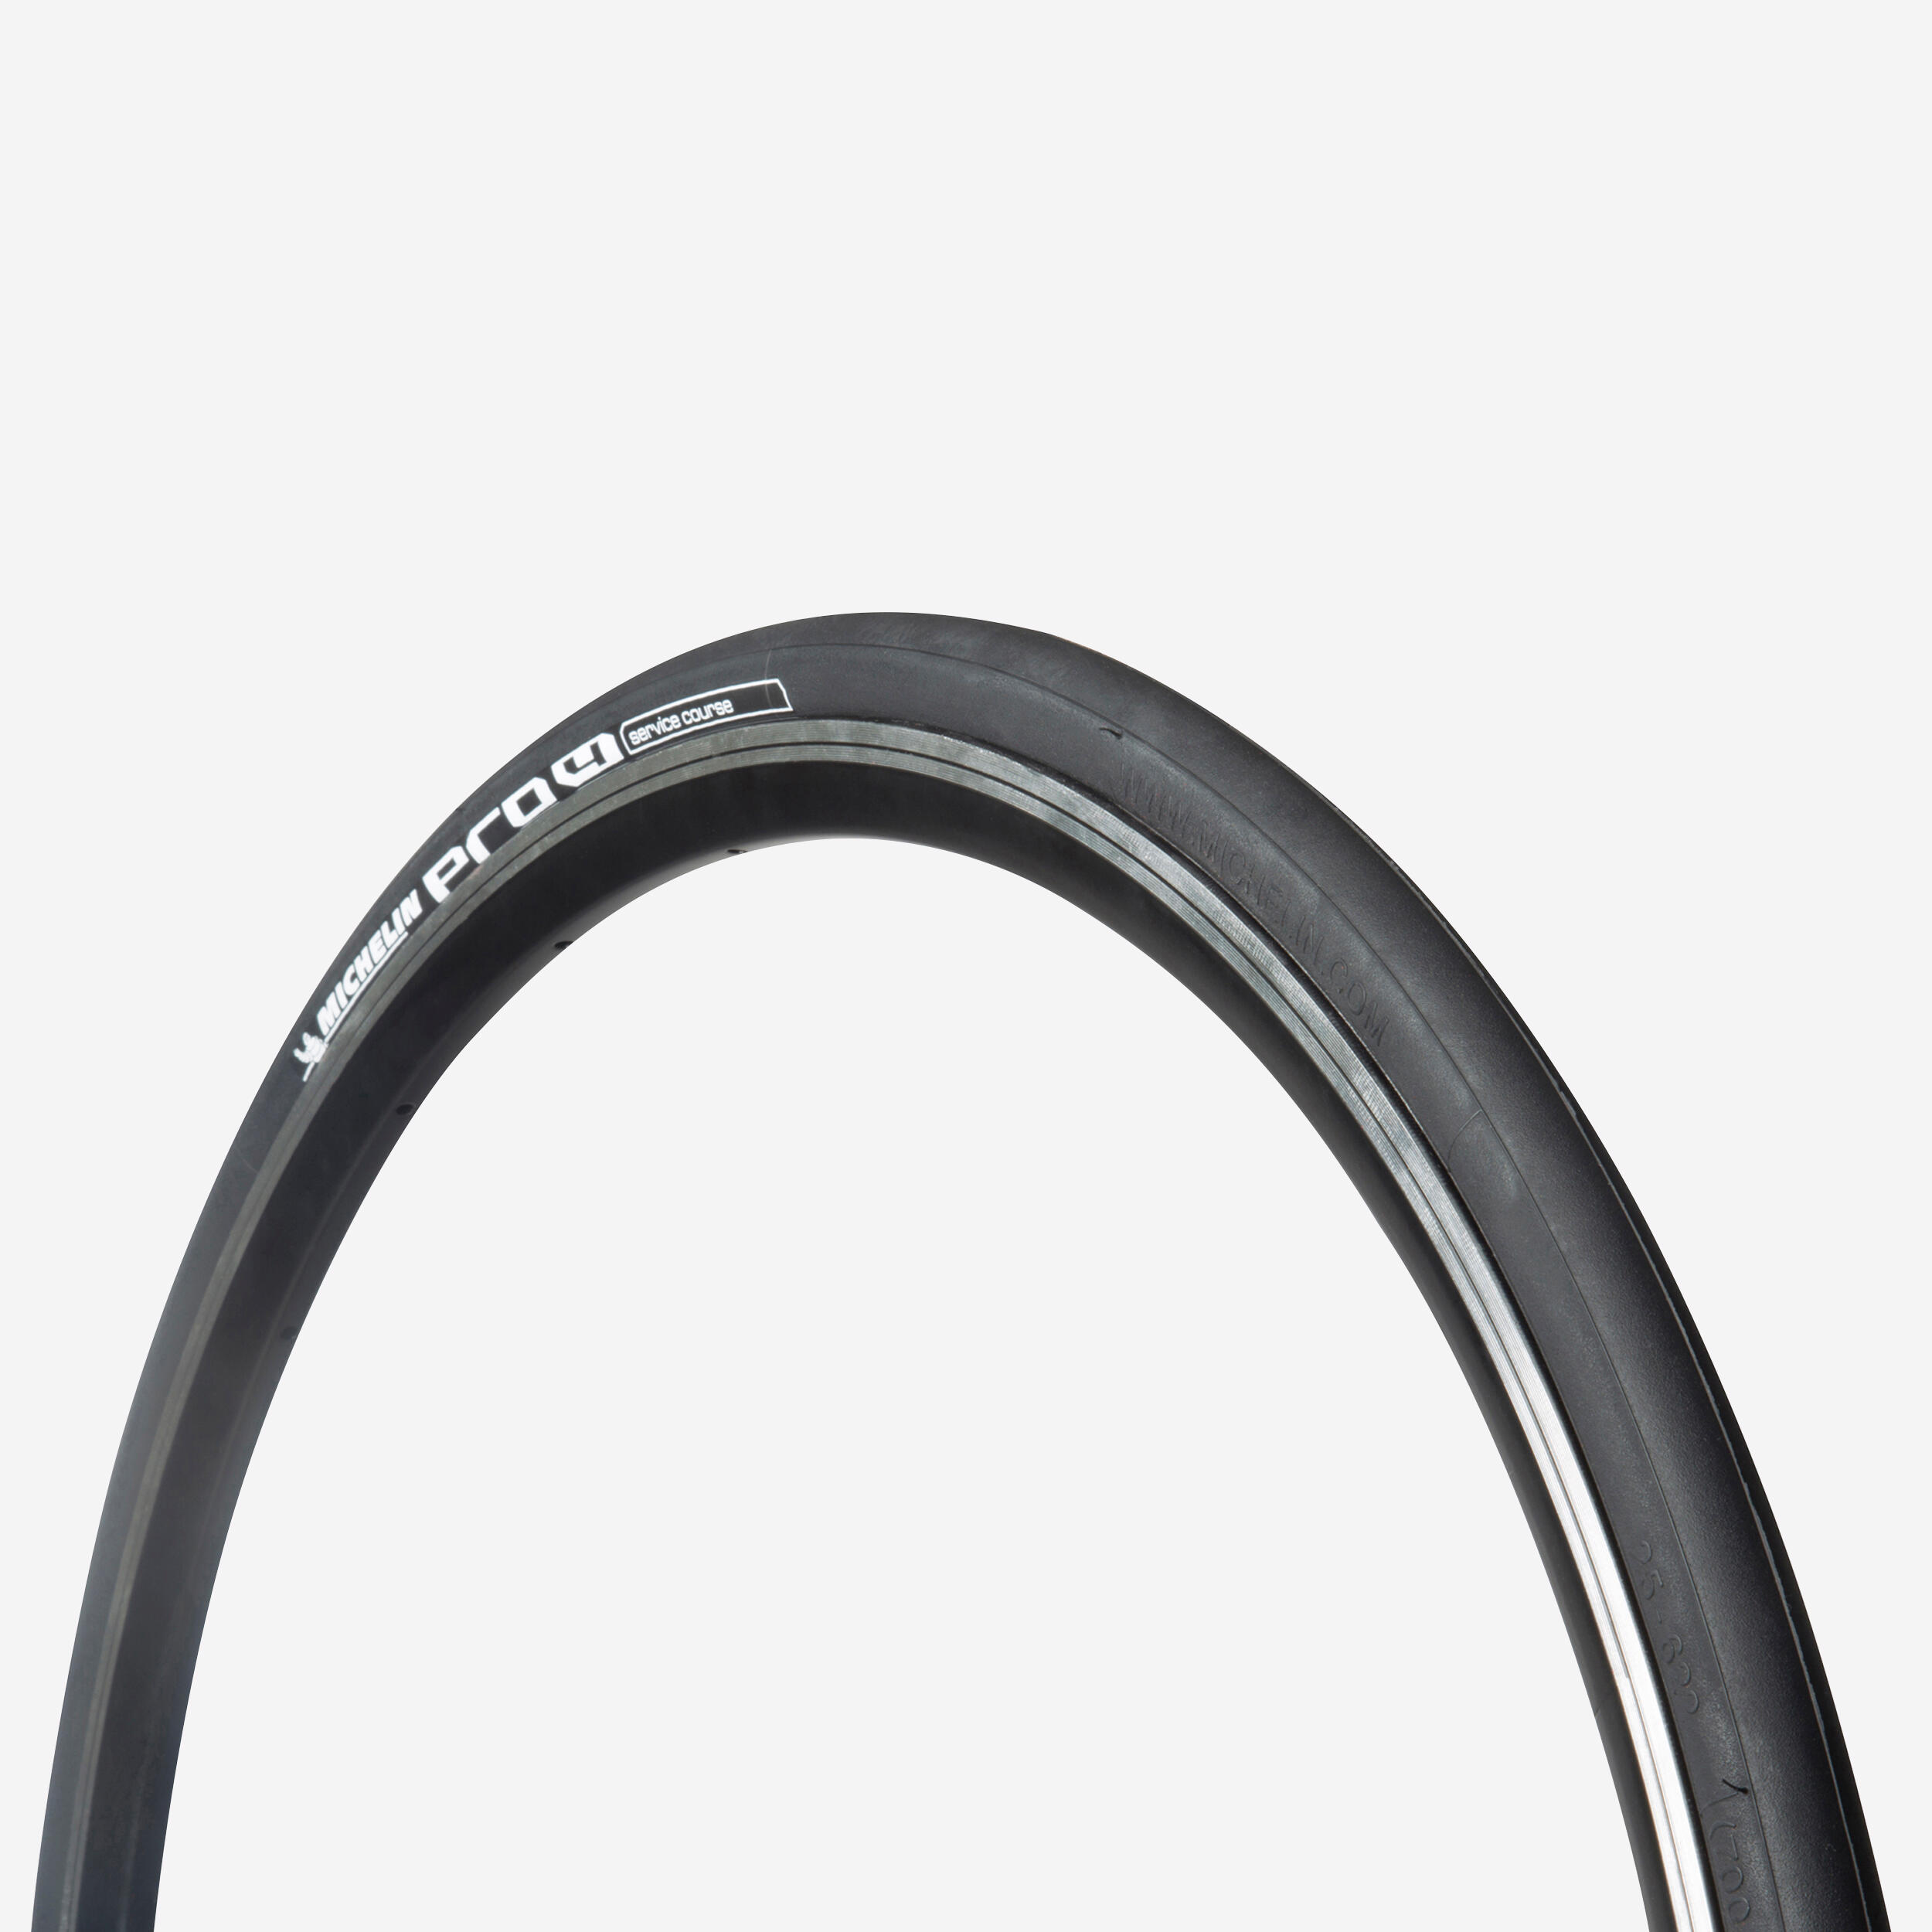 MICHELIN Pro4 Road Bike Tyre 700x23C